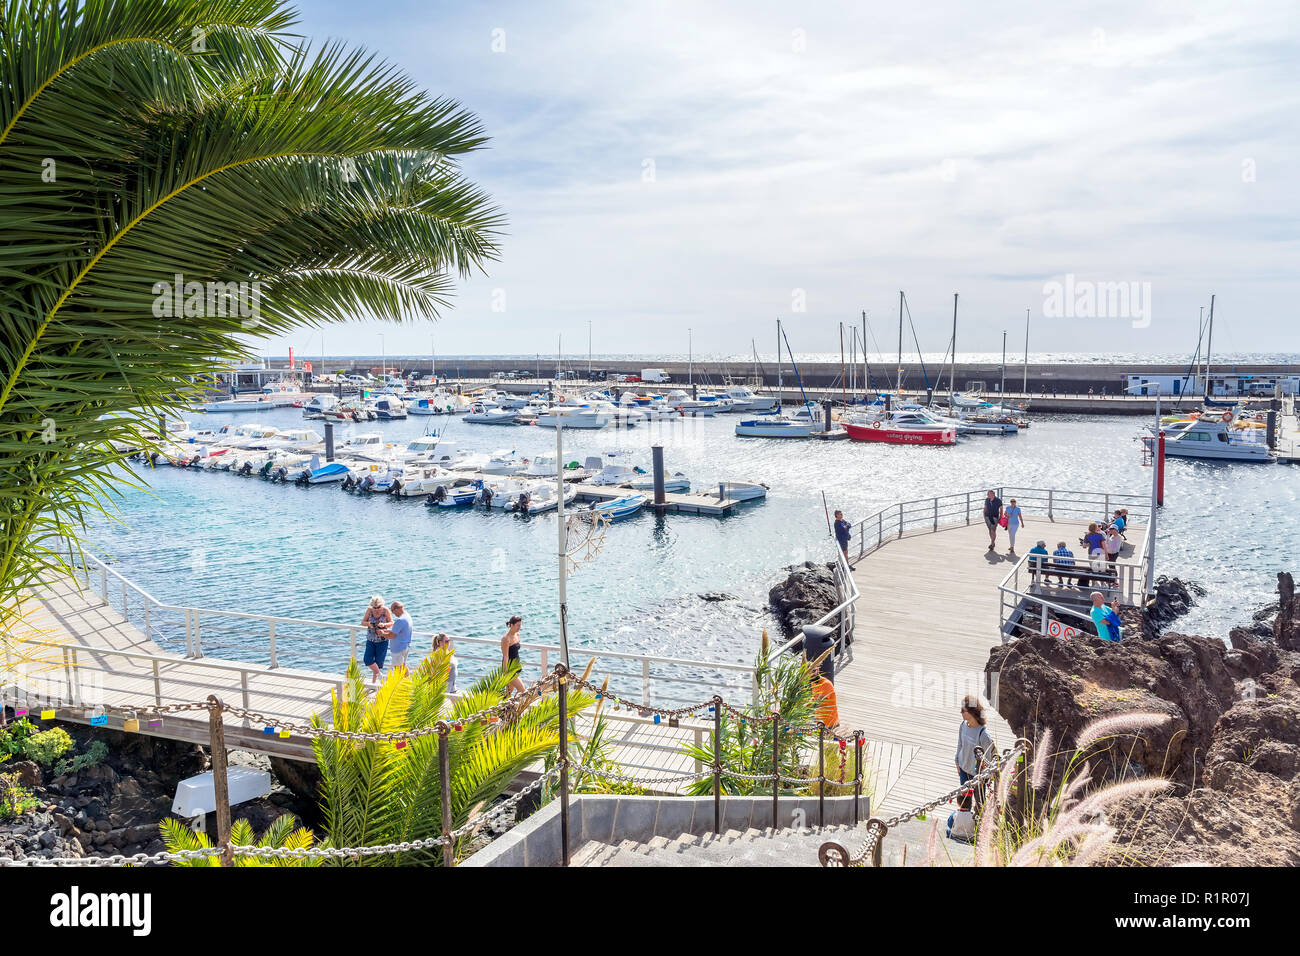 Puerto del Carmen, Espagne - 30 décembre 2016 : la vue quotidienne de la vieille ville et la promenade du port avec les touristes à Puerto del Carmen, Espagne. Puerto del Carmen est Banque D'Images